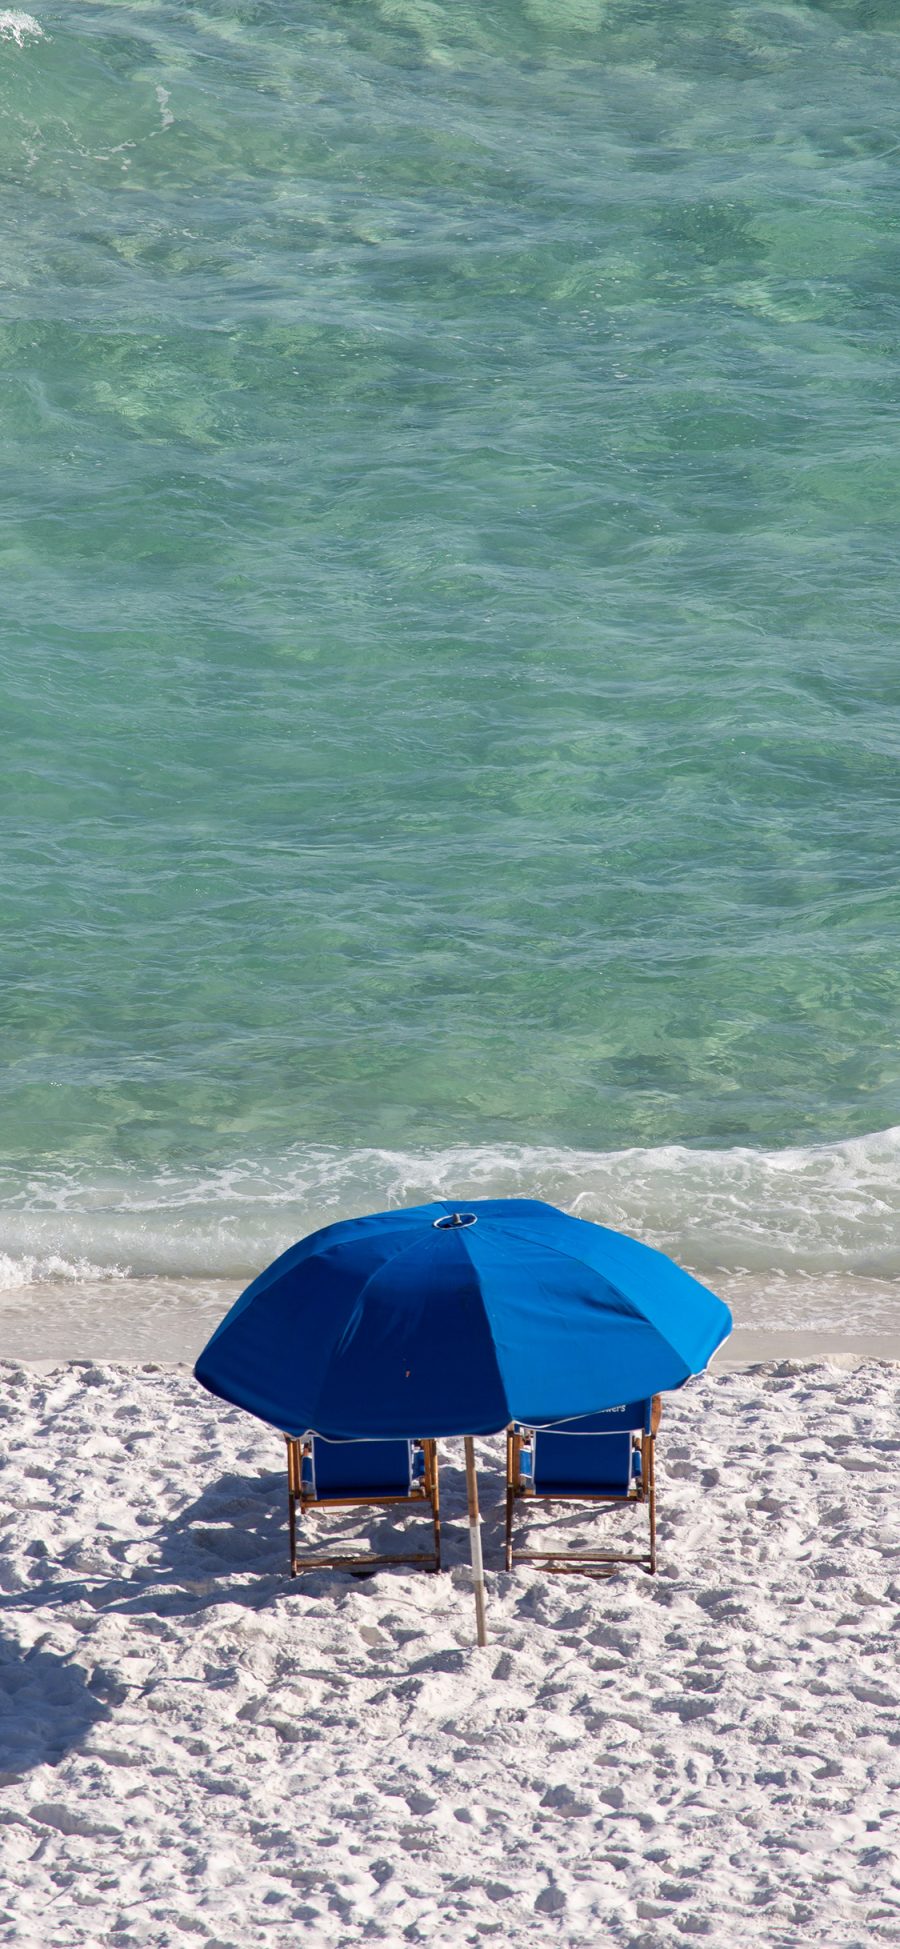 [2436×1125]大海 沙滩 遮阳伞 蓝色 休闲 苹果手机壁纸图片